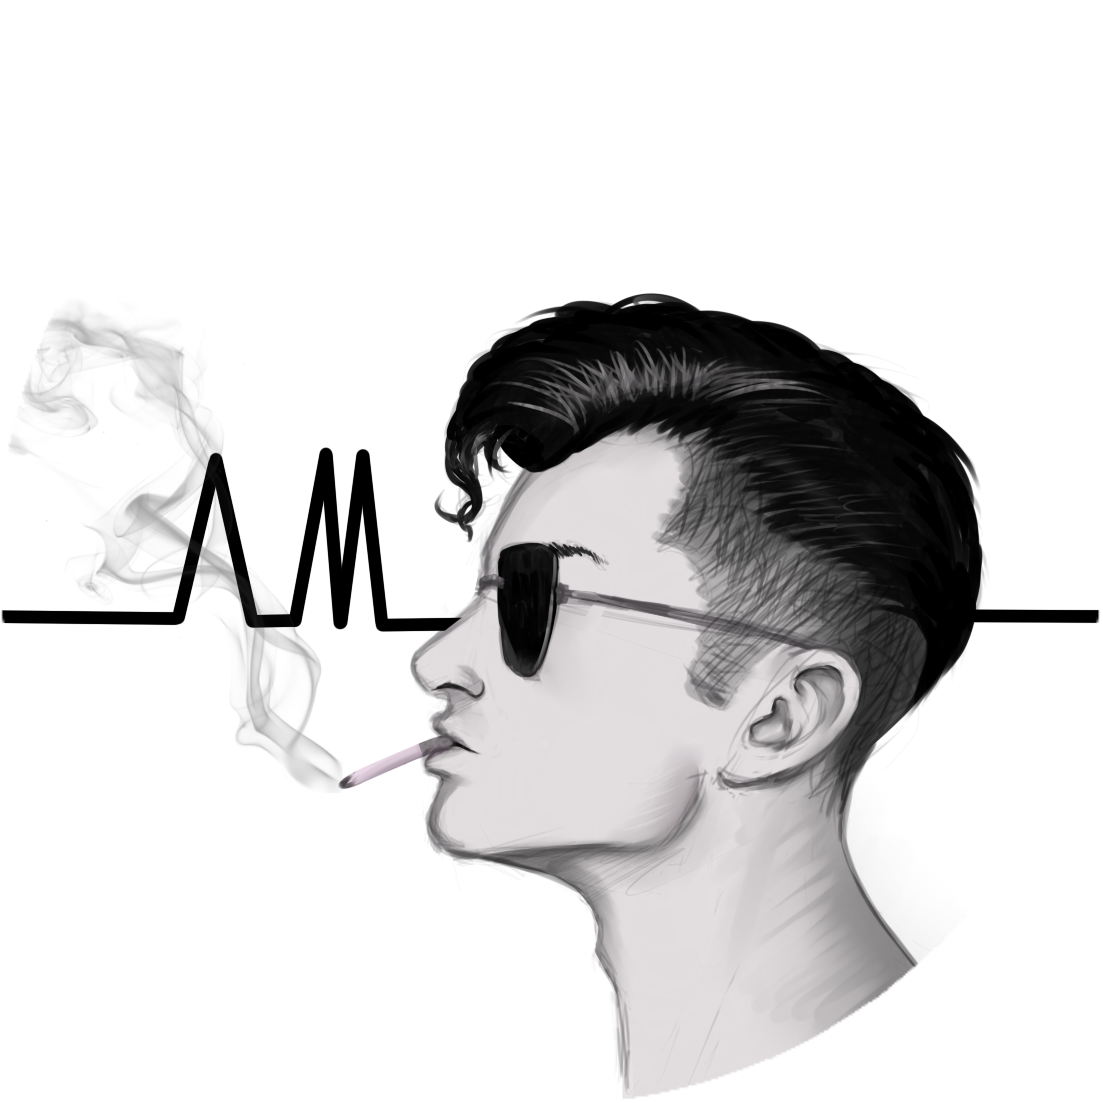 Stylish Man Smoking Illustration